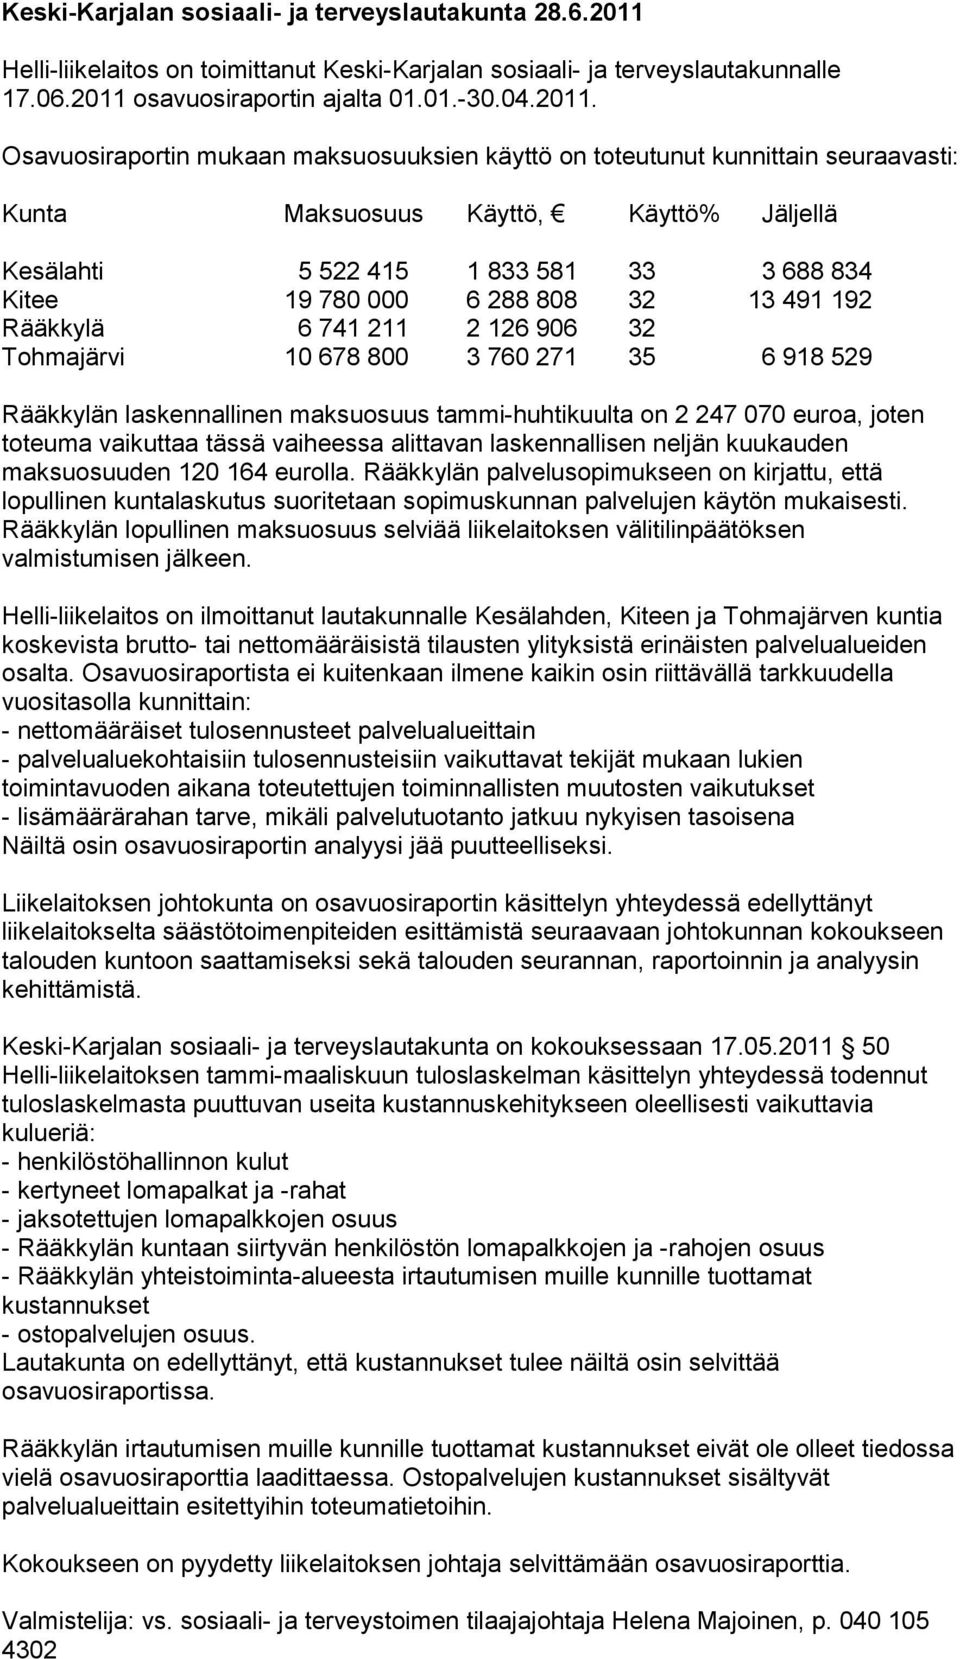 osavuosiraportin ajalta 01.01.-30.04.2011.